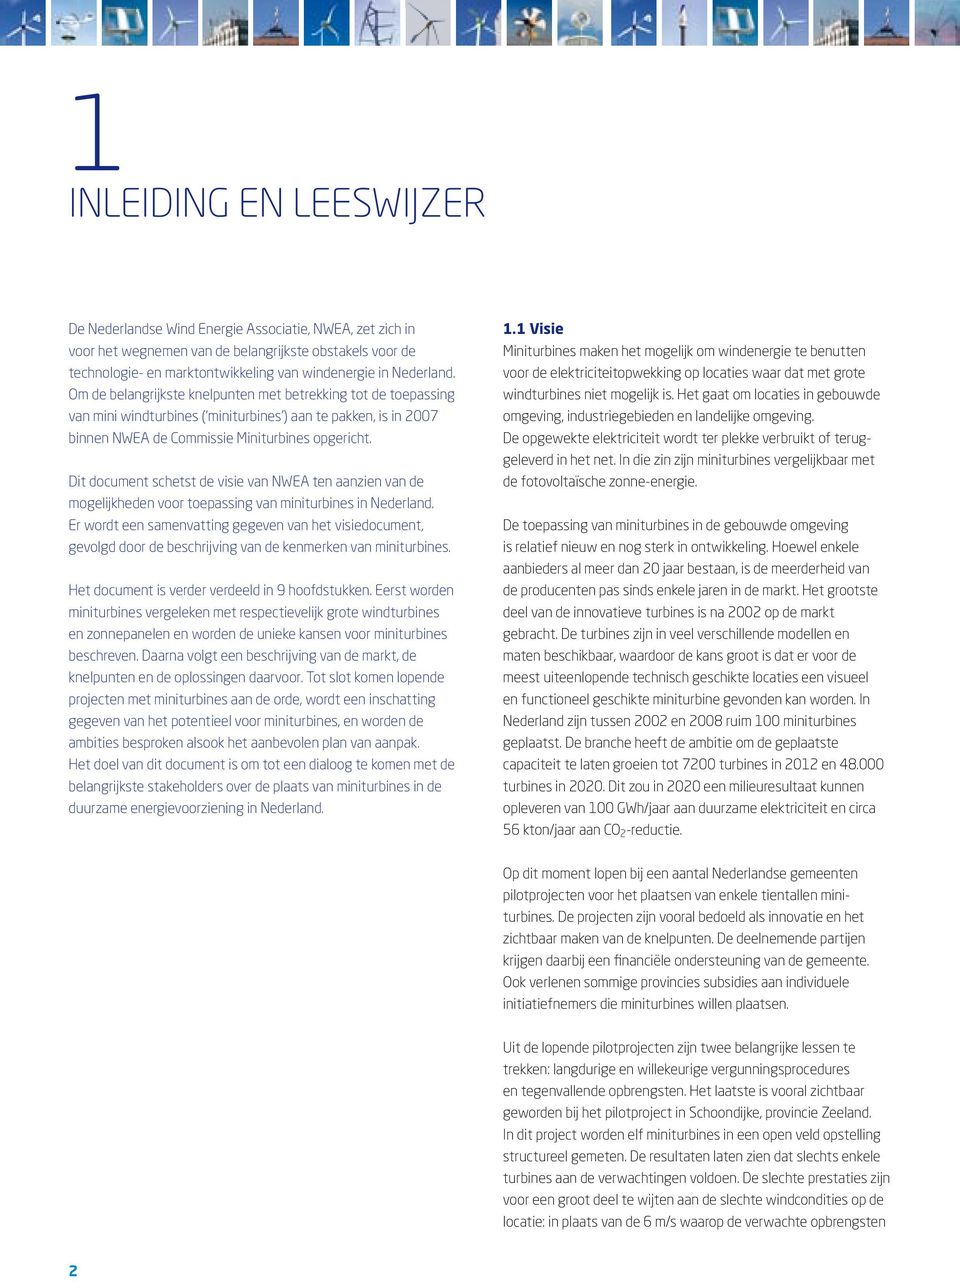 Dit document schetst de visie van NWEA ten aanzien van de mogelijkheden voor toepassing van miniturbines in Nederland.